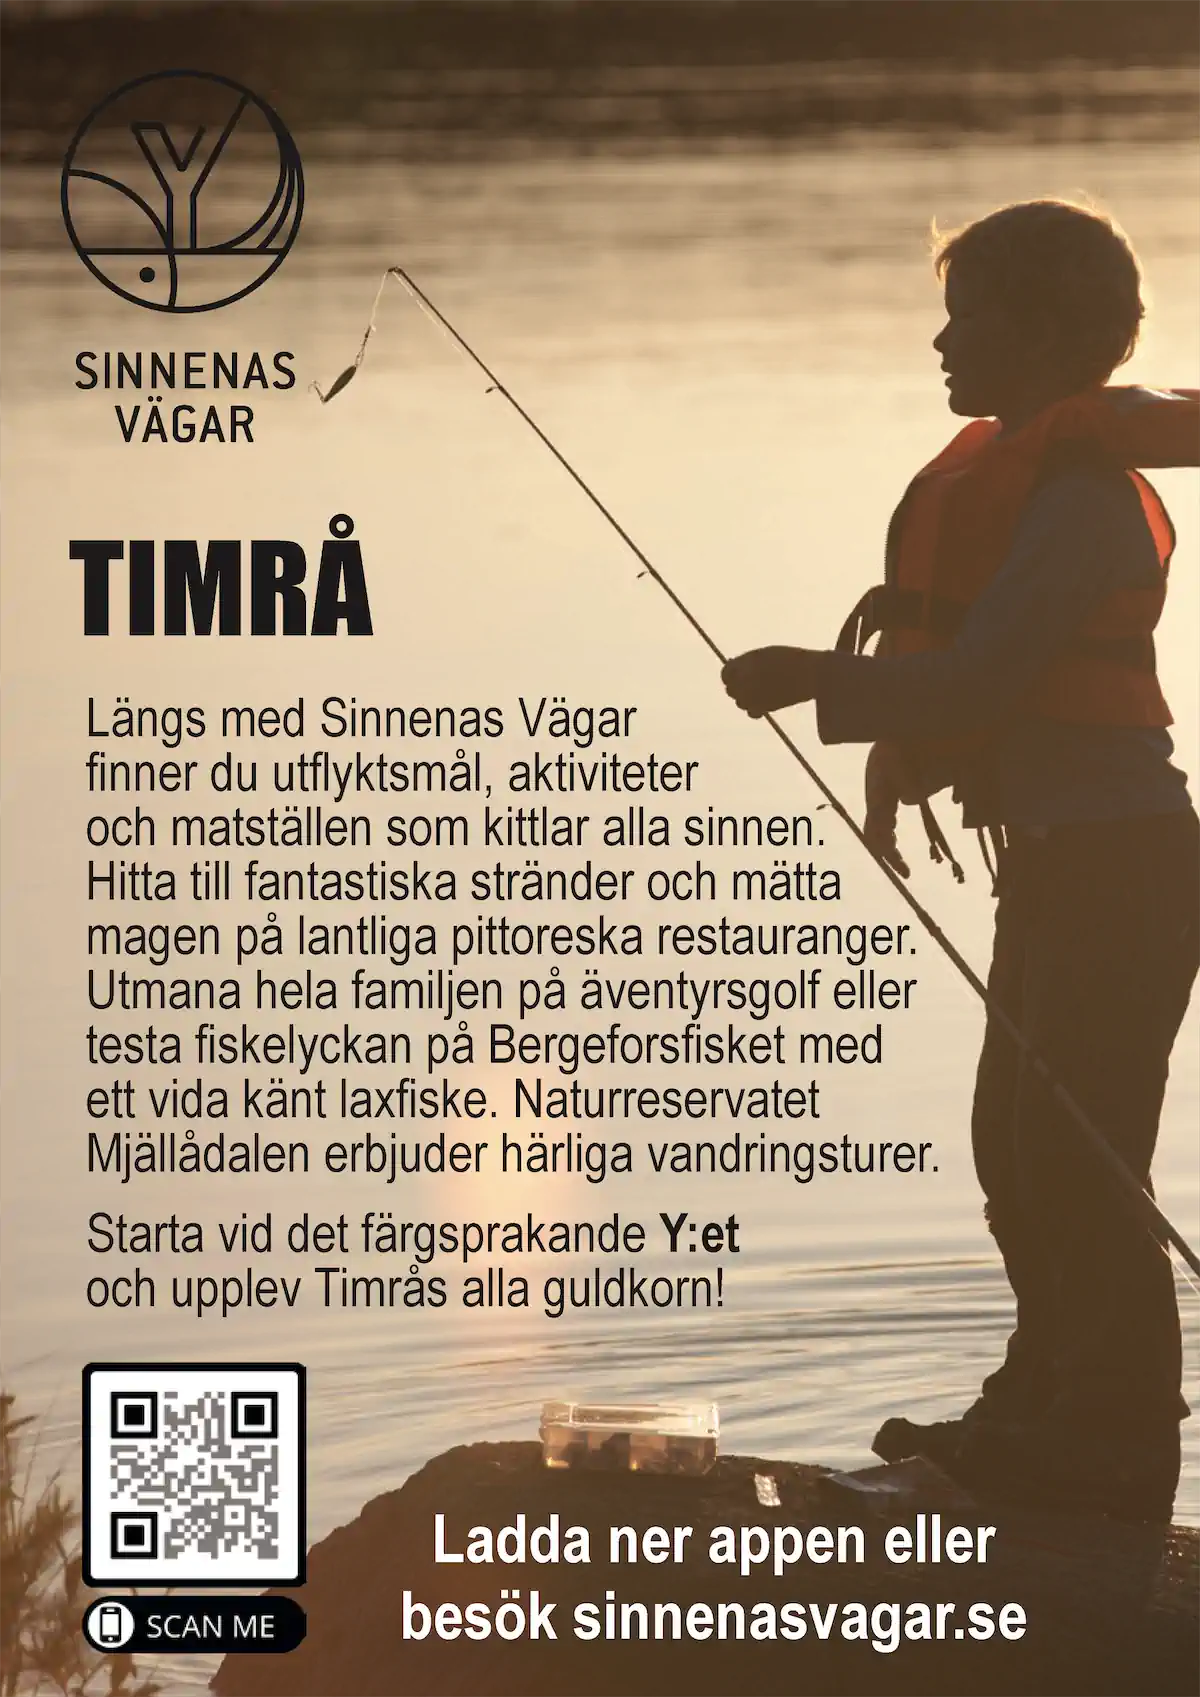 Sinnenas vägar i Timrå kommun